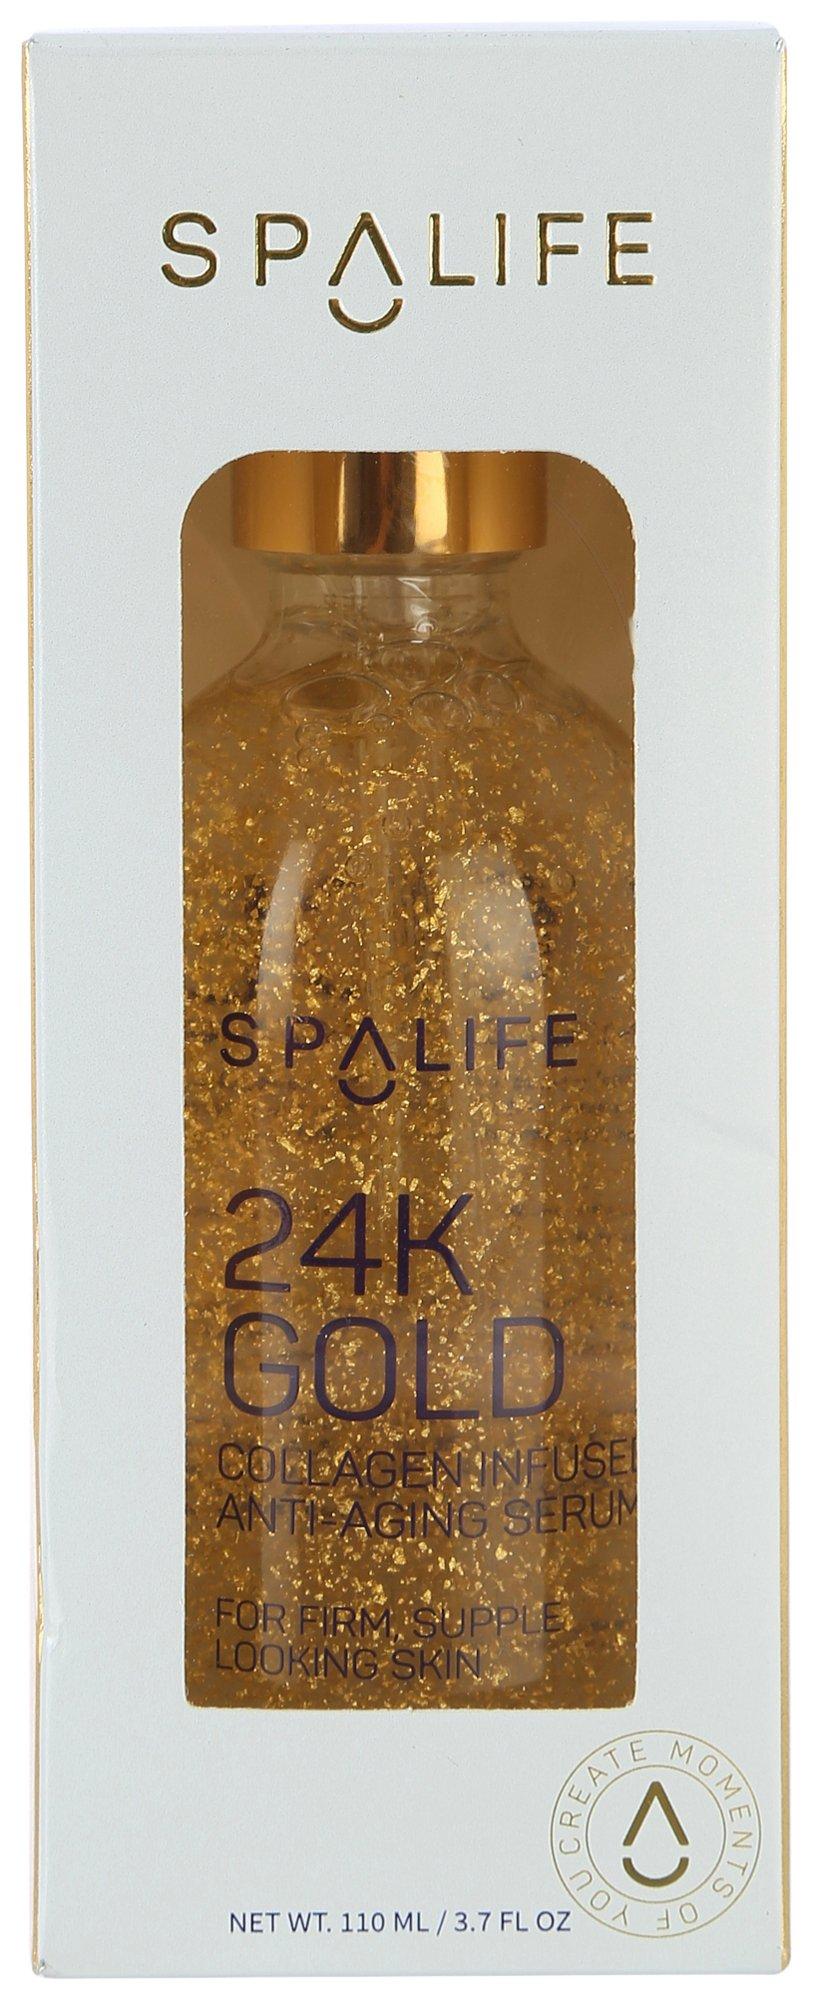 SpaLife 24K Gold Collagen Anti-Aging Serum